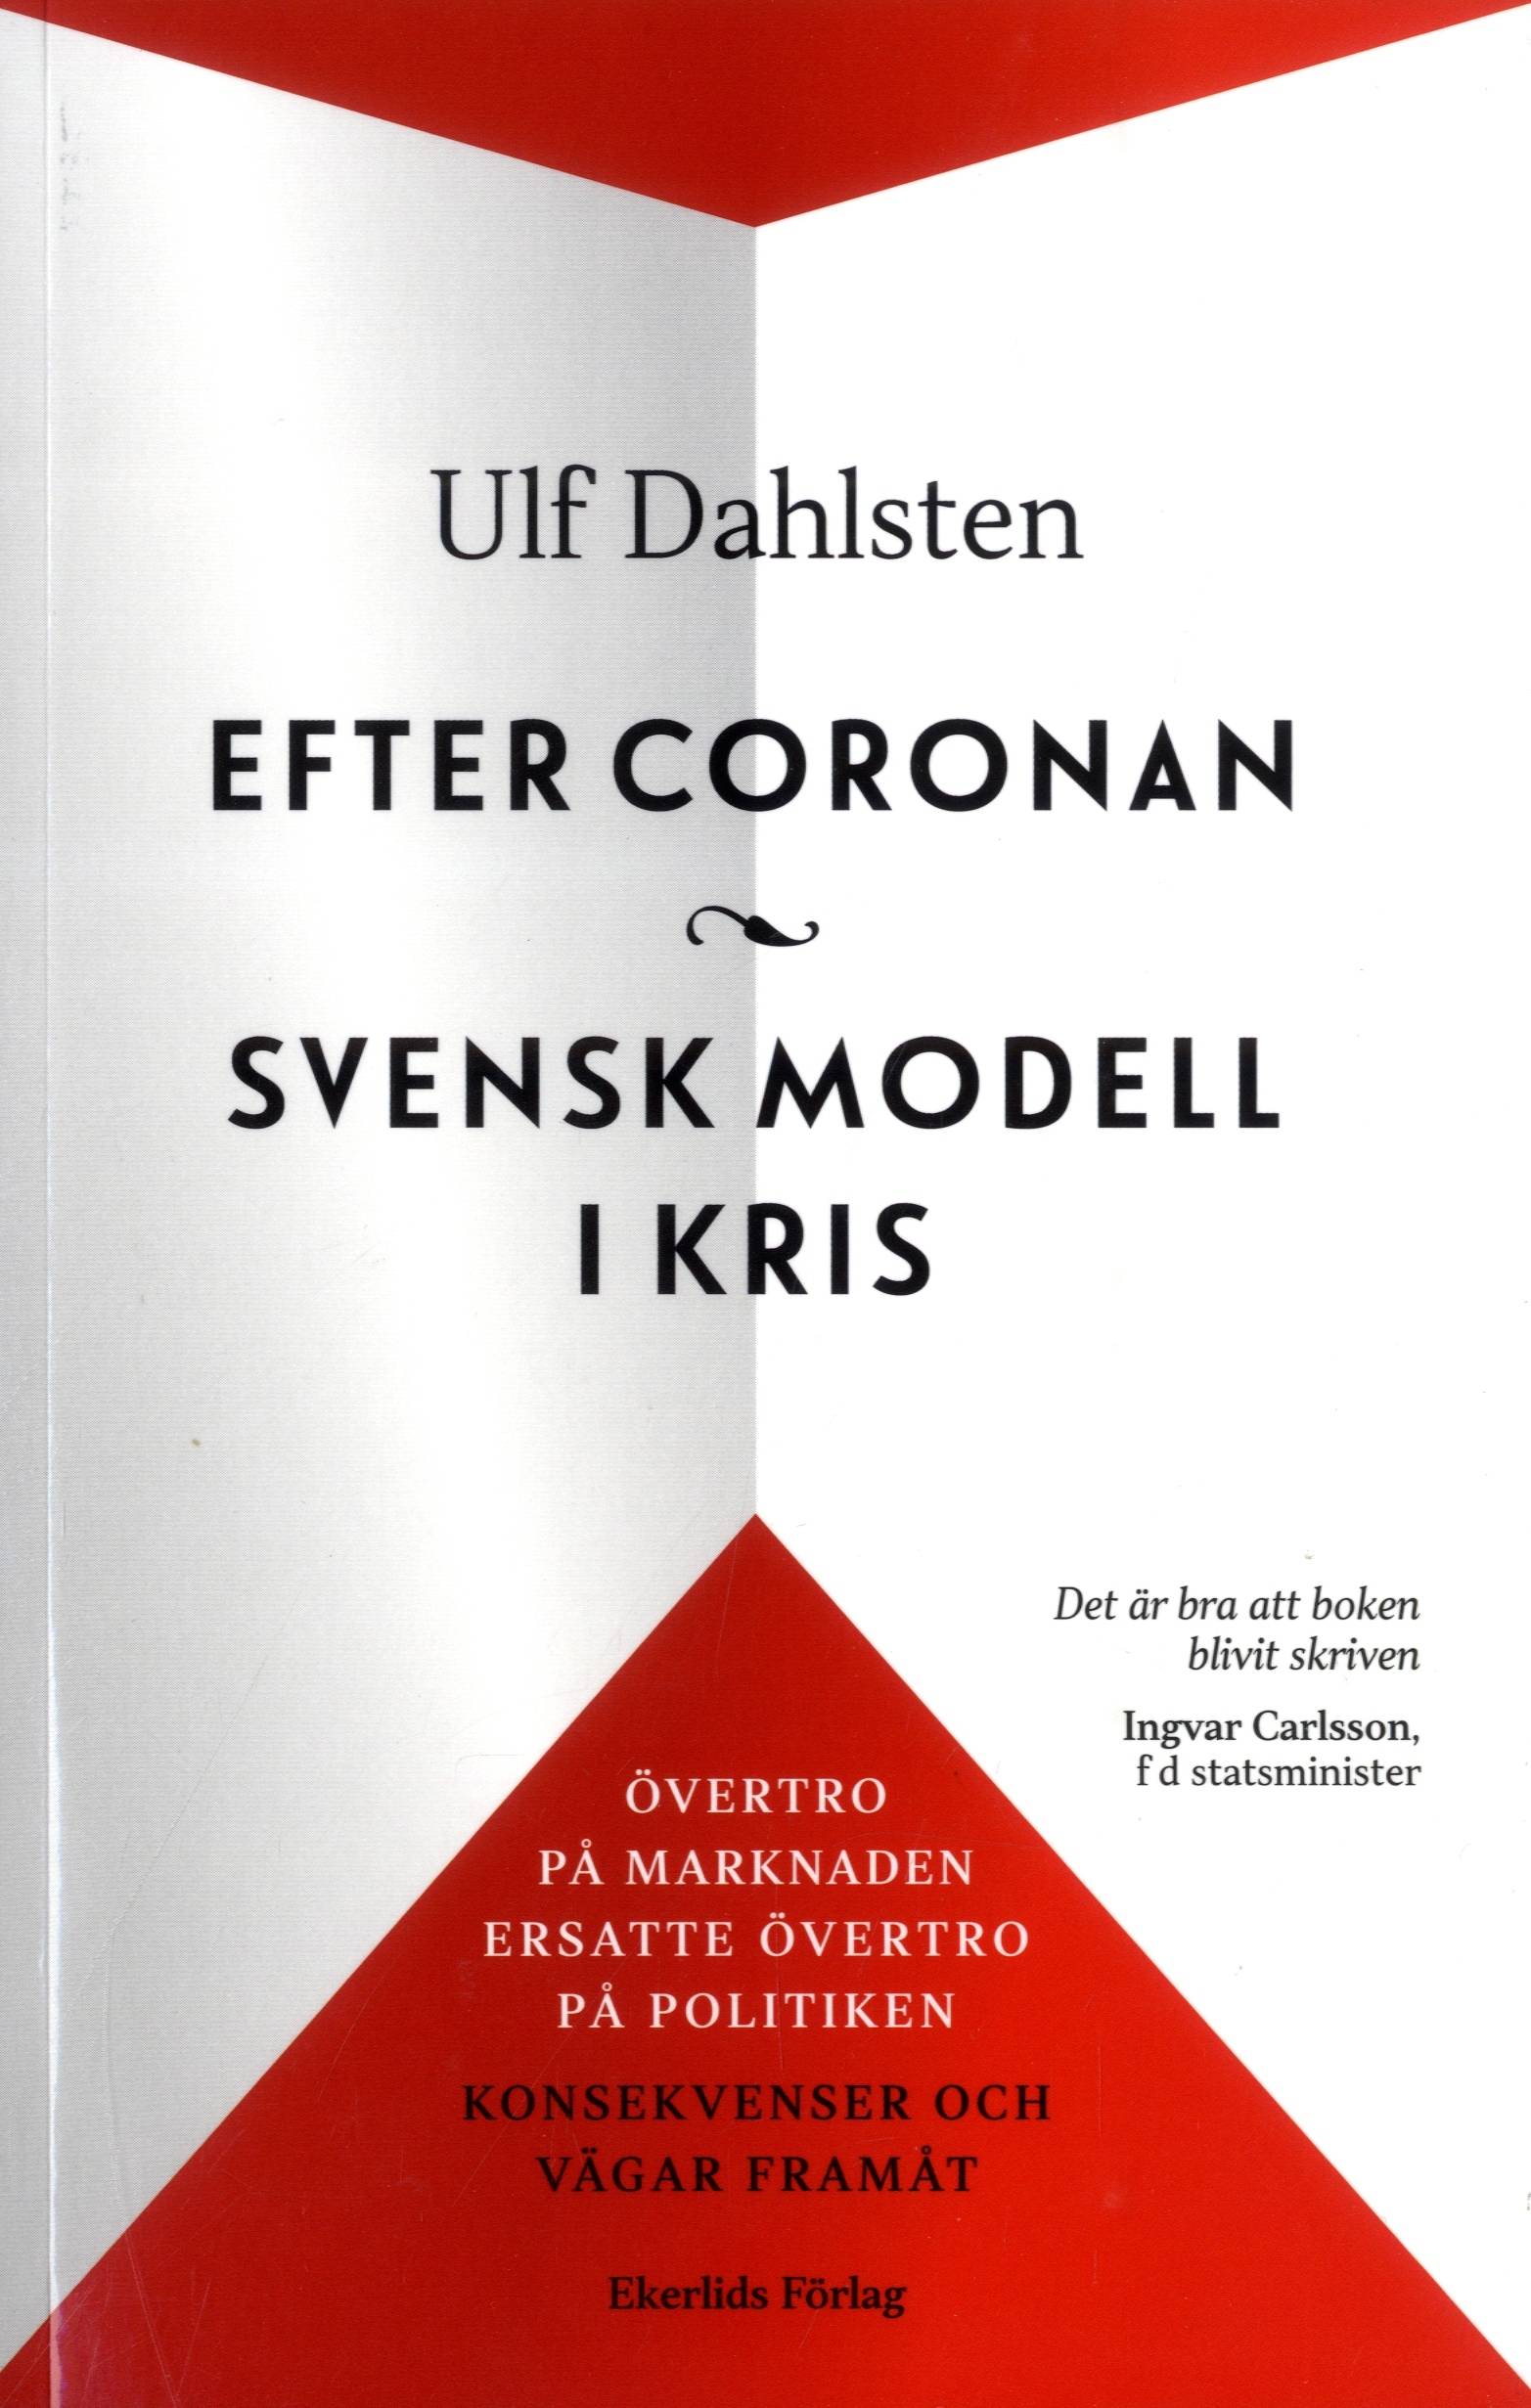 Efter Coronan : svensk modell i kris : övertro på marknaden ersatte övertro på politiken - konsekvenser och vägar framåt